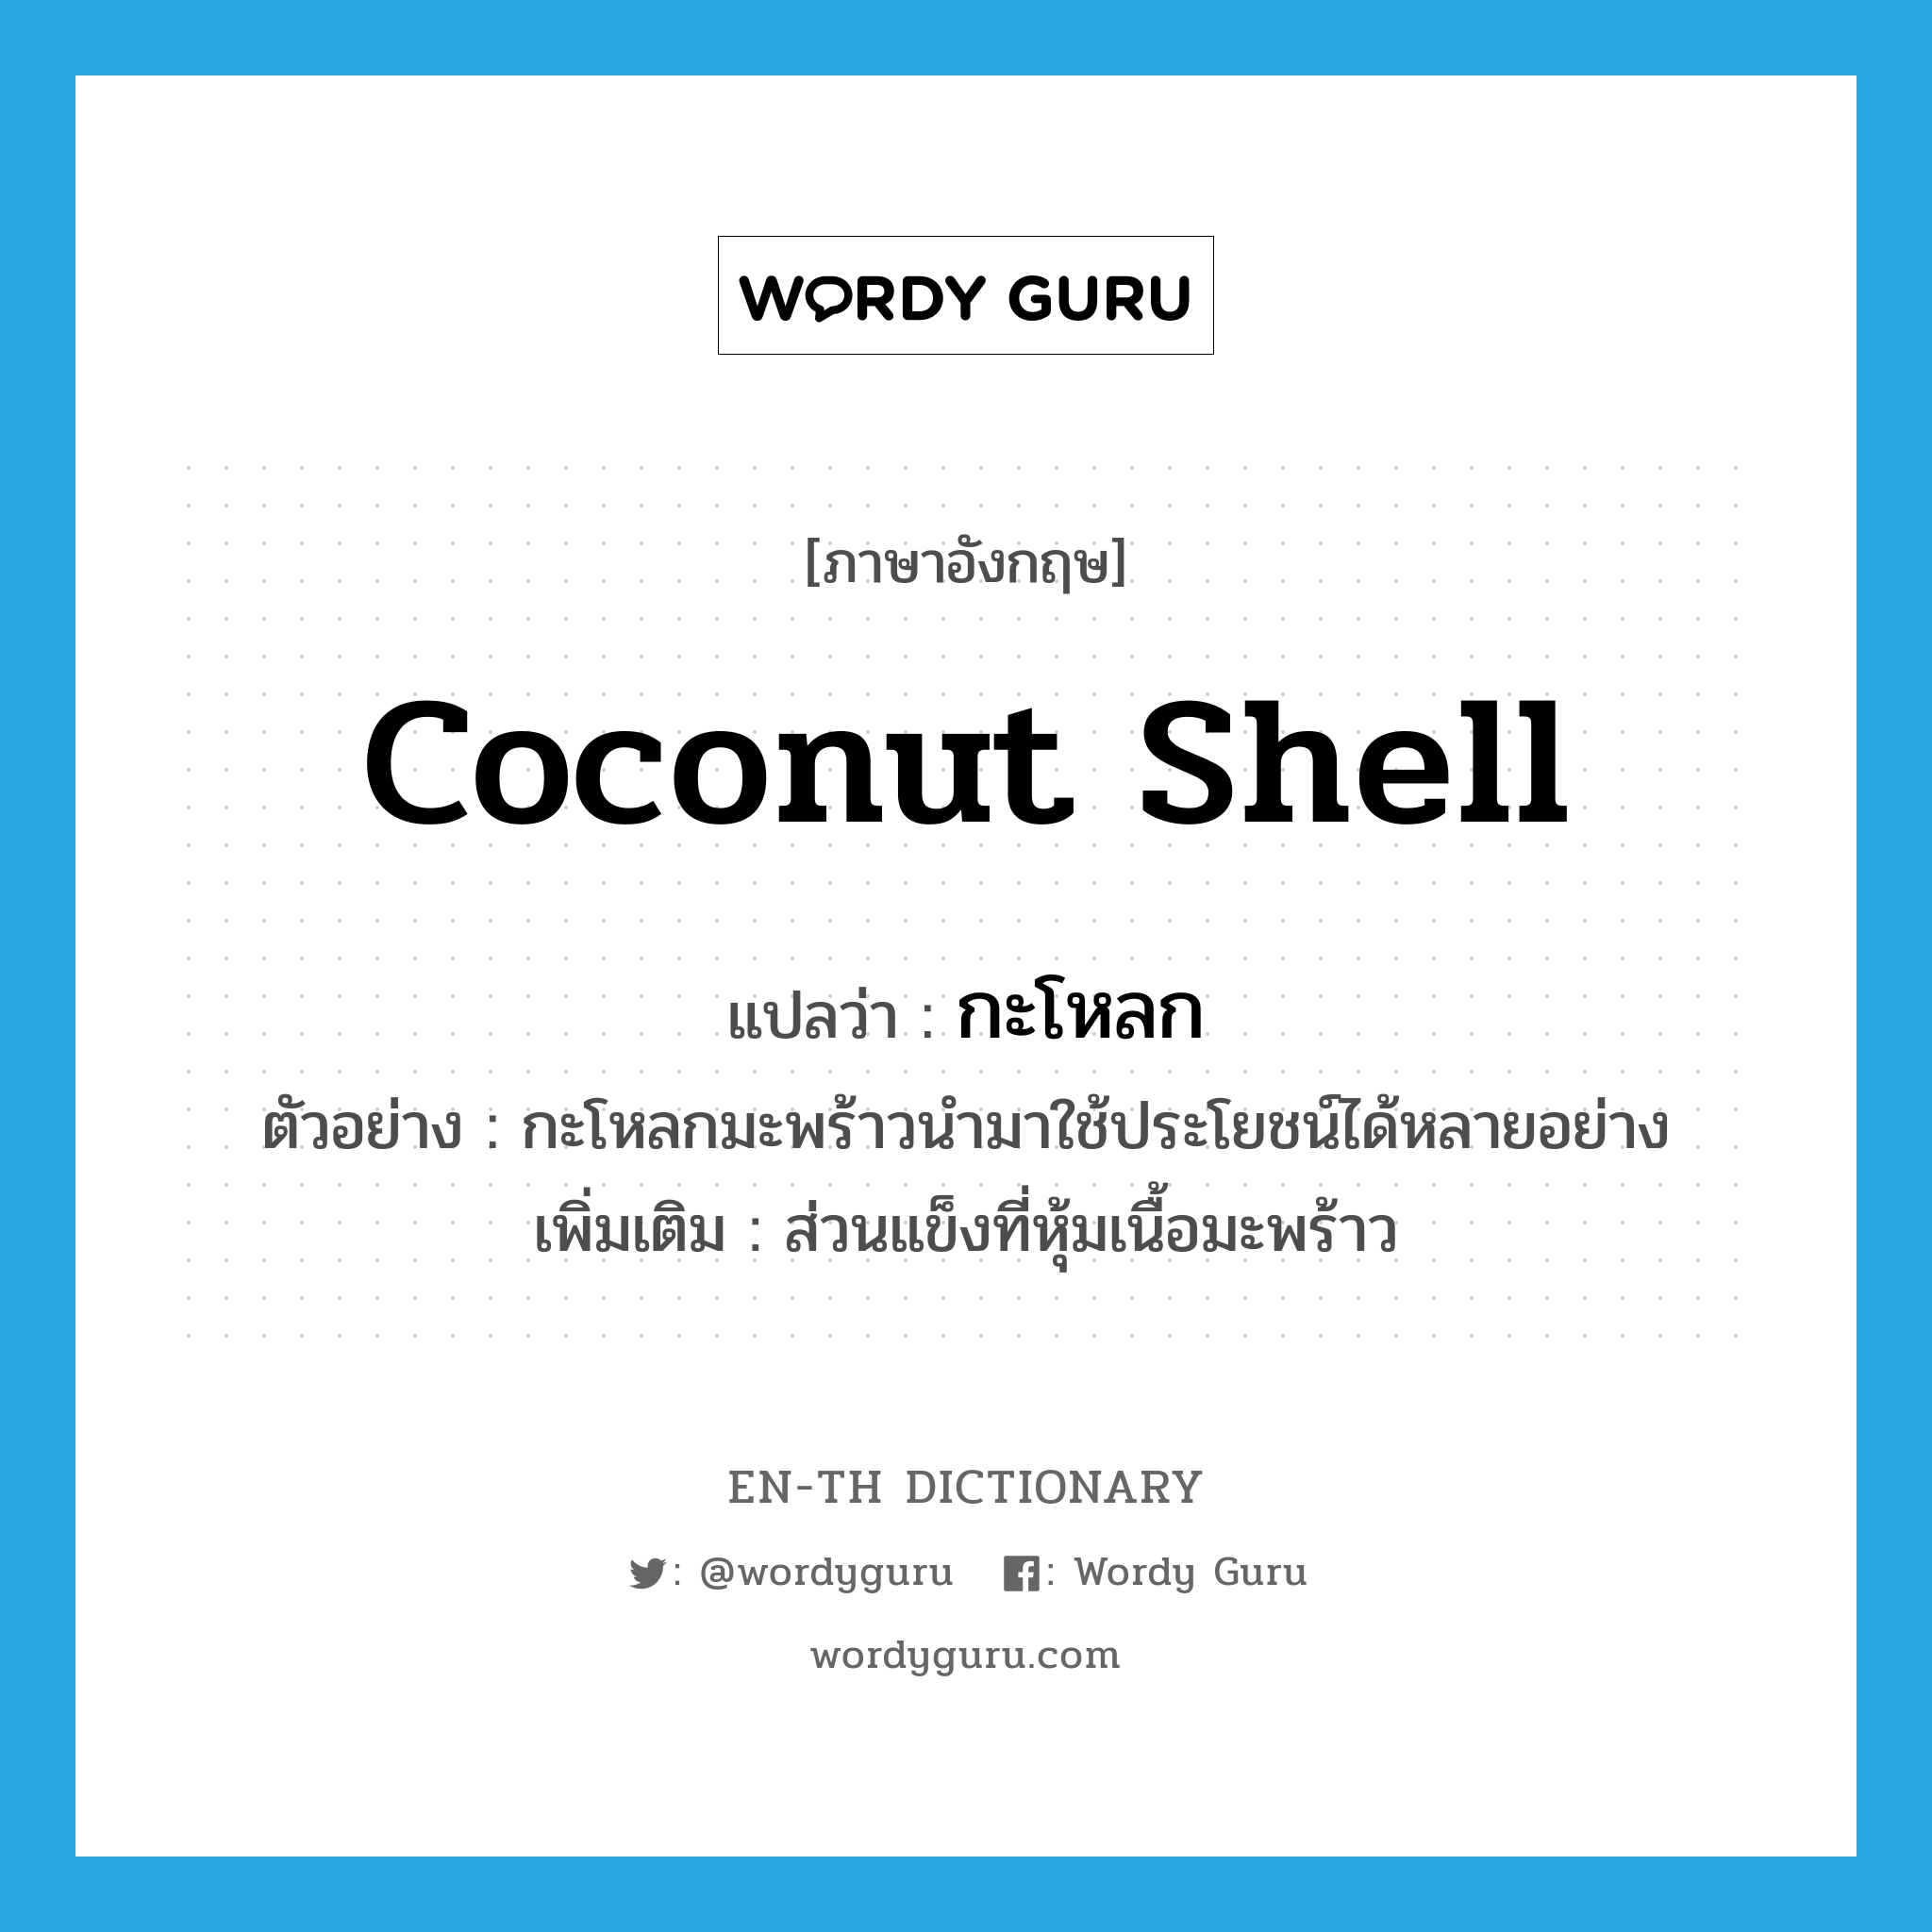 กะโหลก ภาษาอังกฤษ?, คำศัพท์ภาษาอังกฤษ กะโหลก แปลว่า coconut shell ประเภท N ตัวอย่าง กะโหลกมะพร้าวนำมาใช้ประโยชน์ได้หลายอย่าง เพิ่มเติม ส่วนแข็งที่หุ้มเนื้อมะพร้าว หมวด N